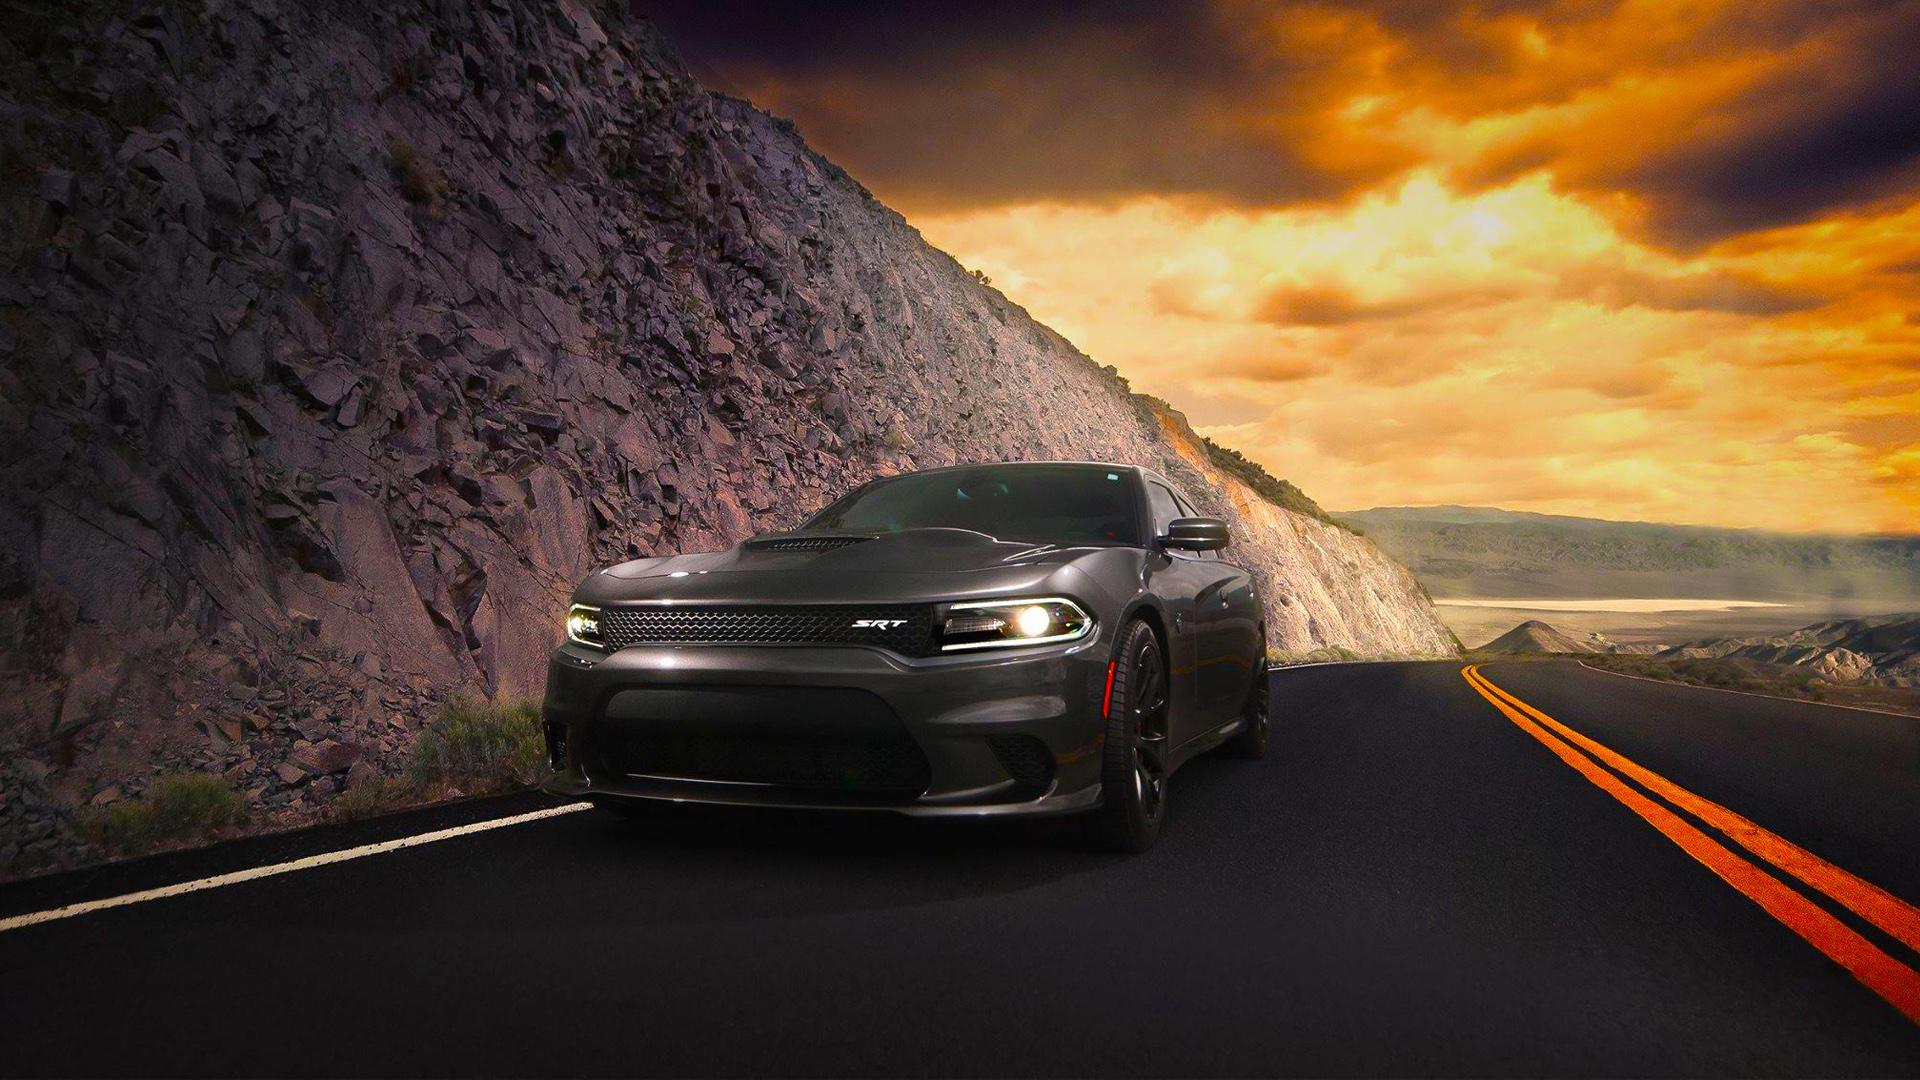 Dodge Charger SRT Hellcat 2015 Wallpaper. HD Car Wallpaper